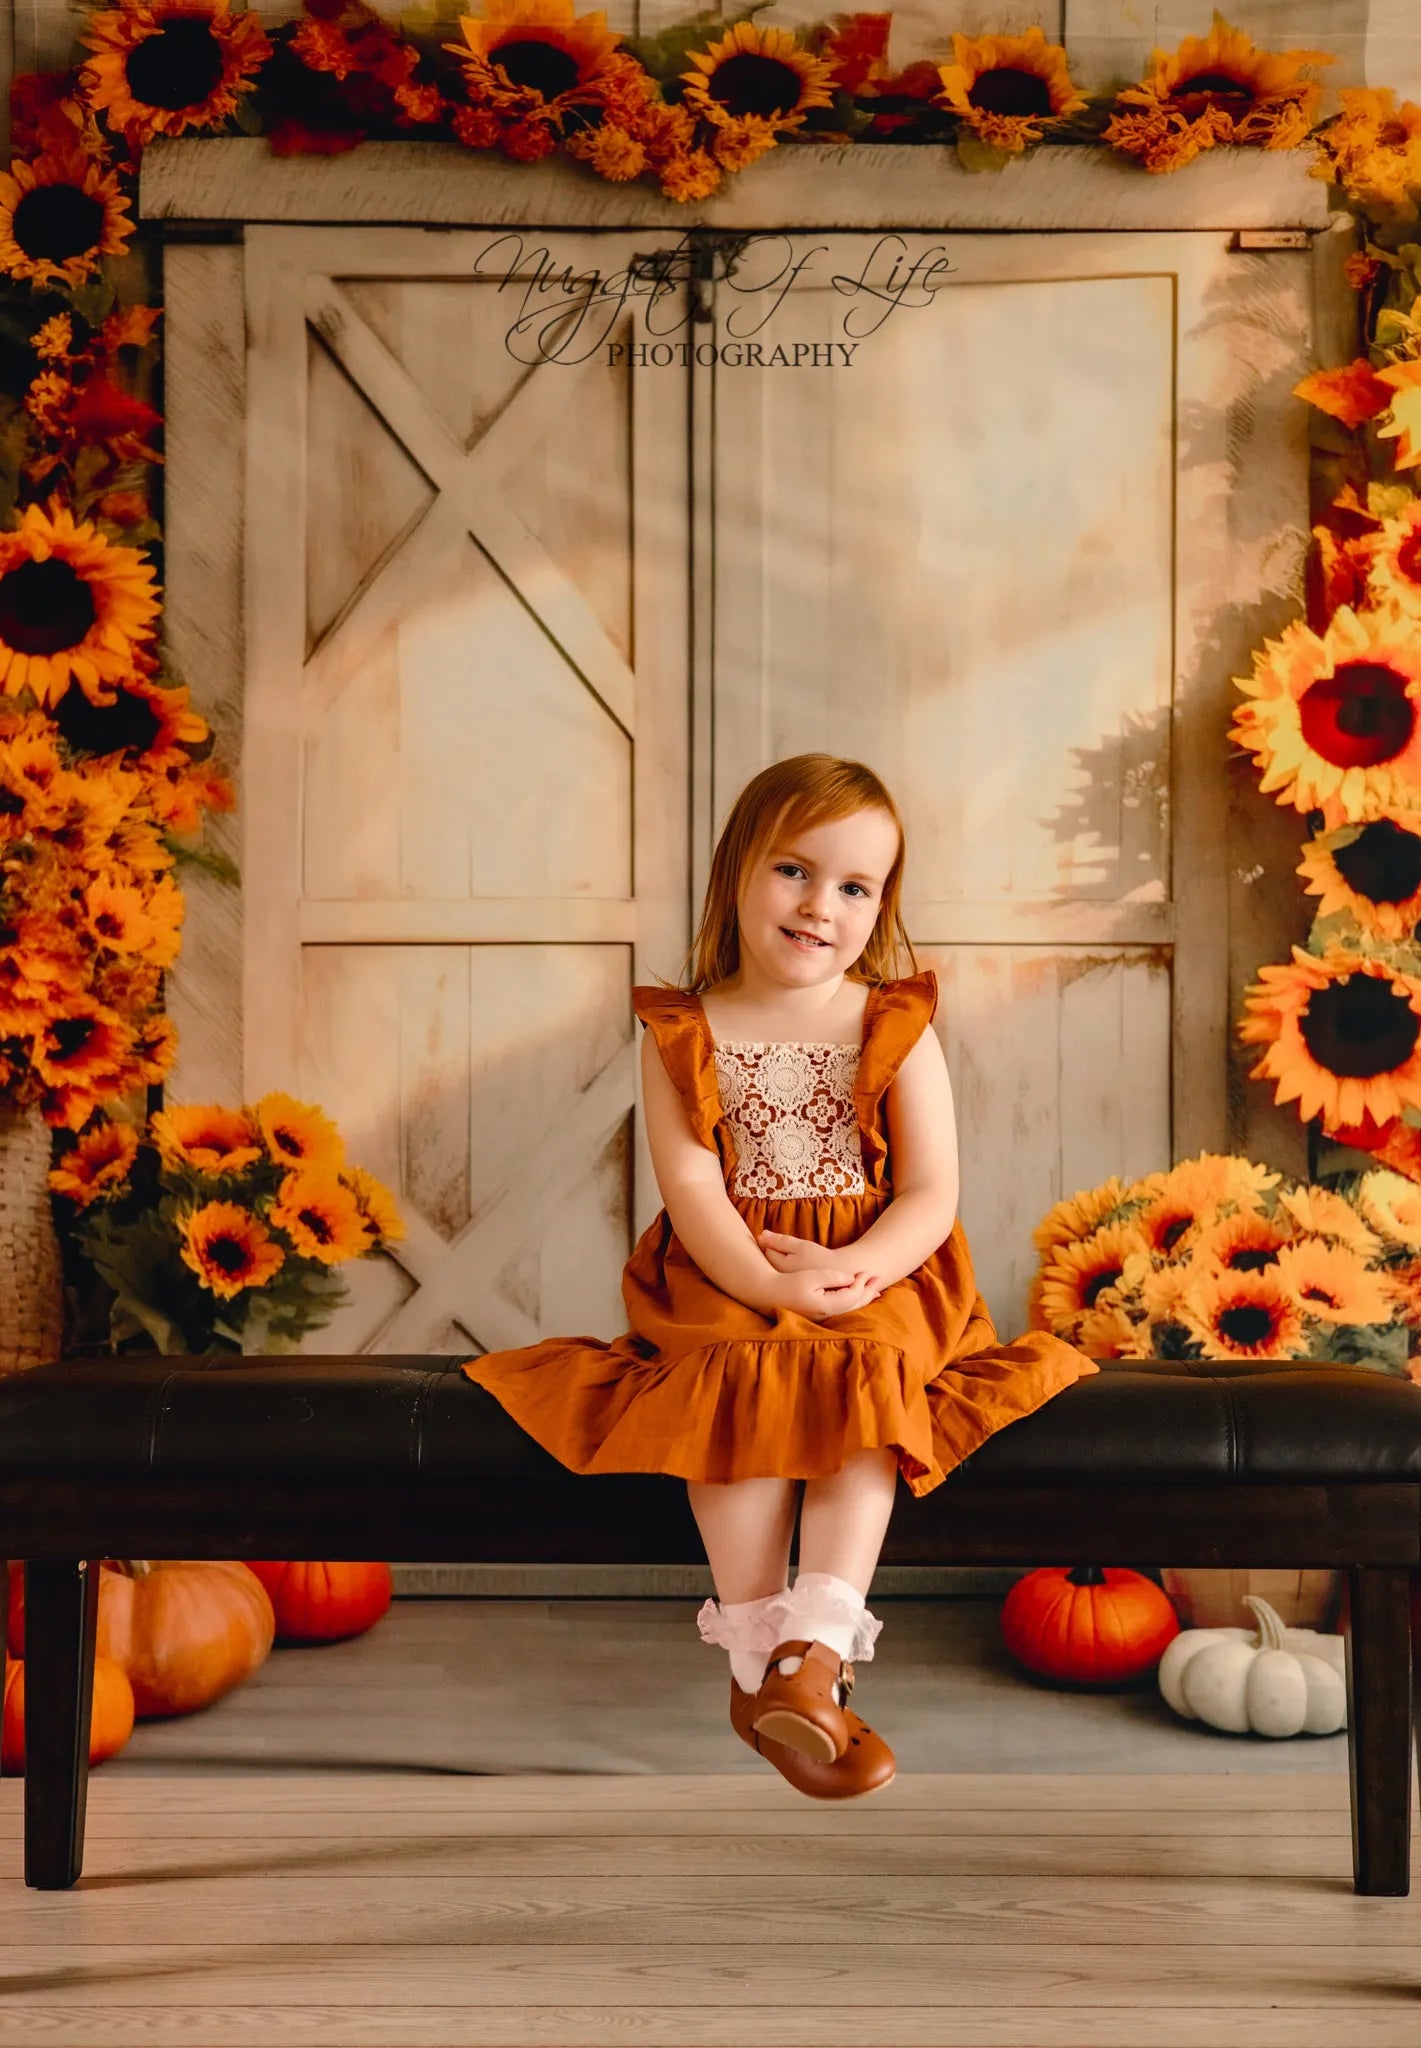 Kate Autumn Sunflower Pumpkin Barn Sun Backdrop Designed by Chain Photography